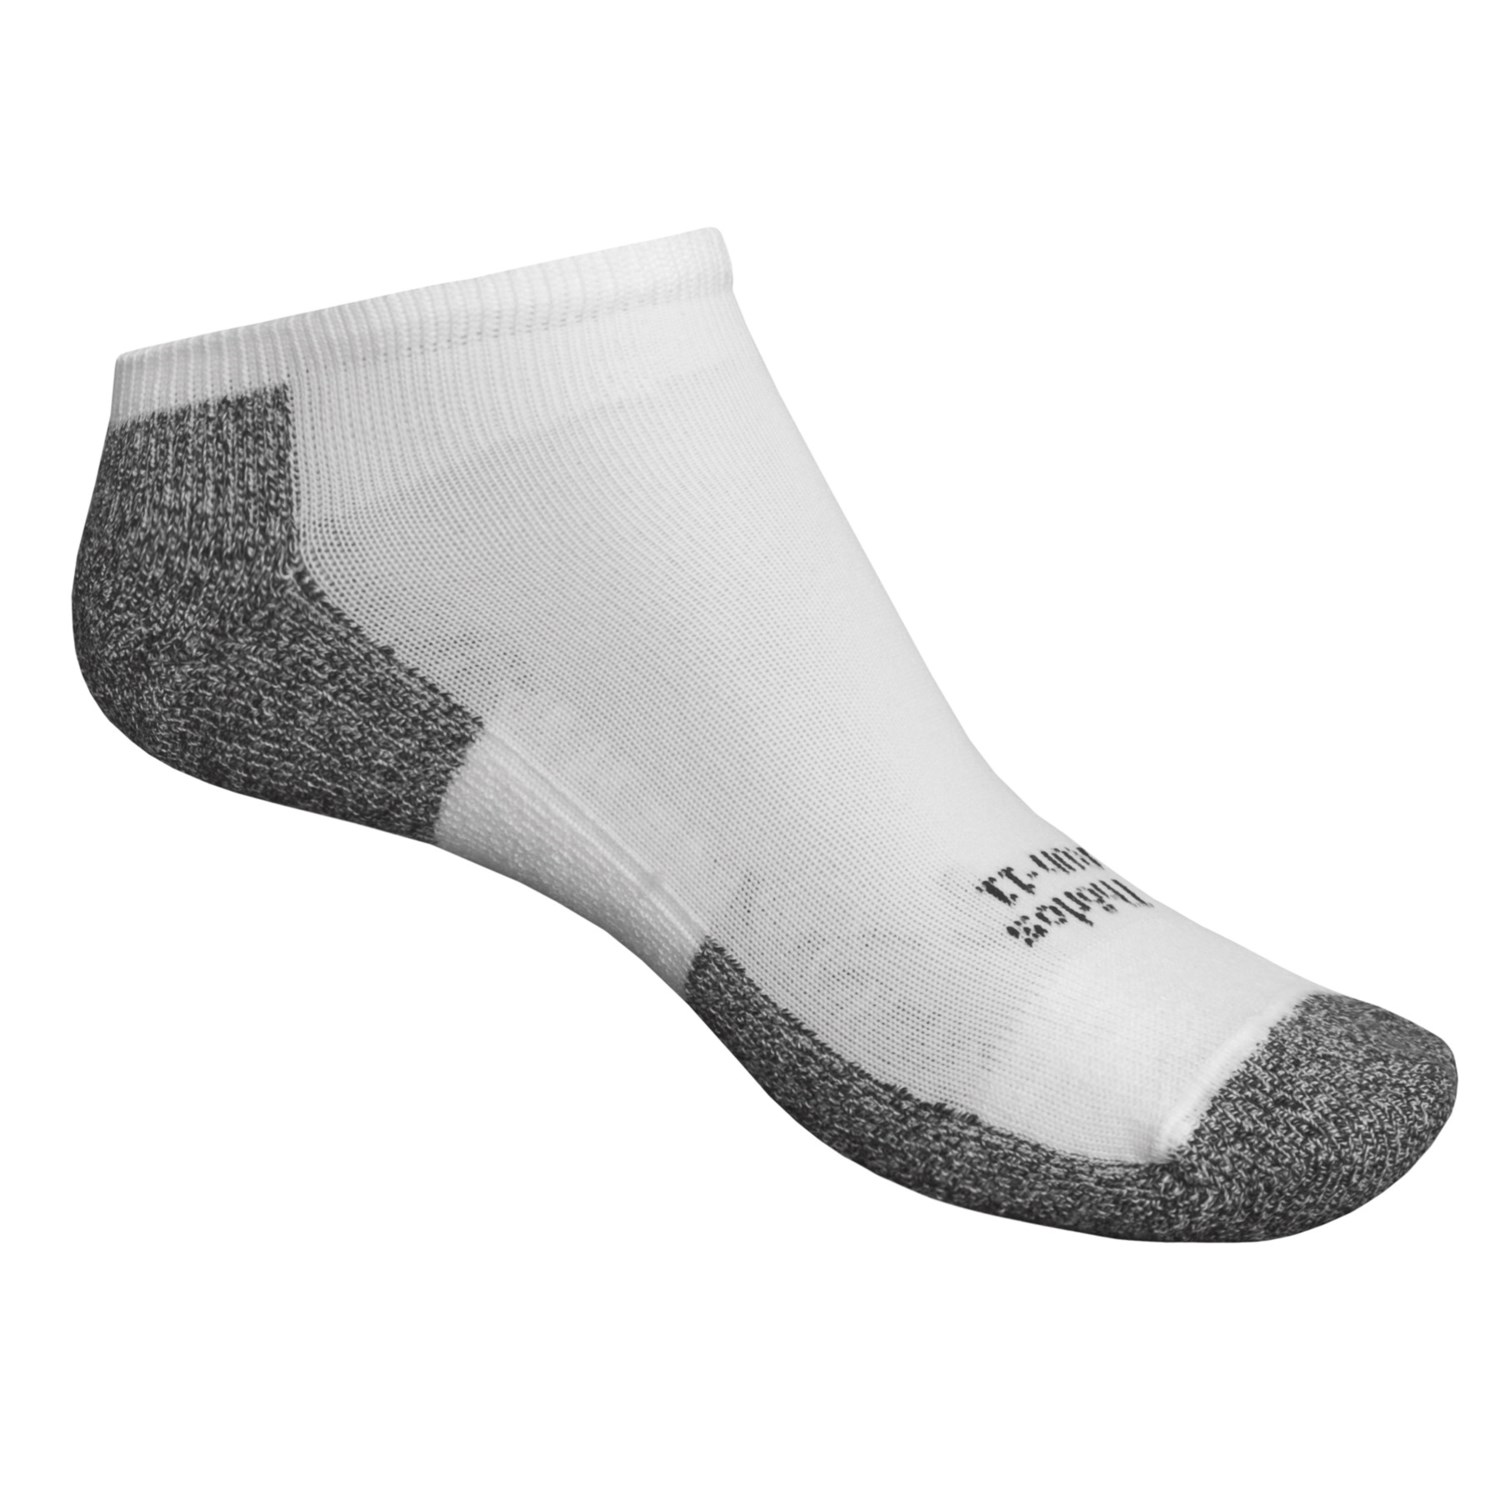 Thorlo Micro Light Running Socks (For Women) - Save 53%